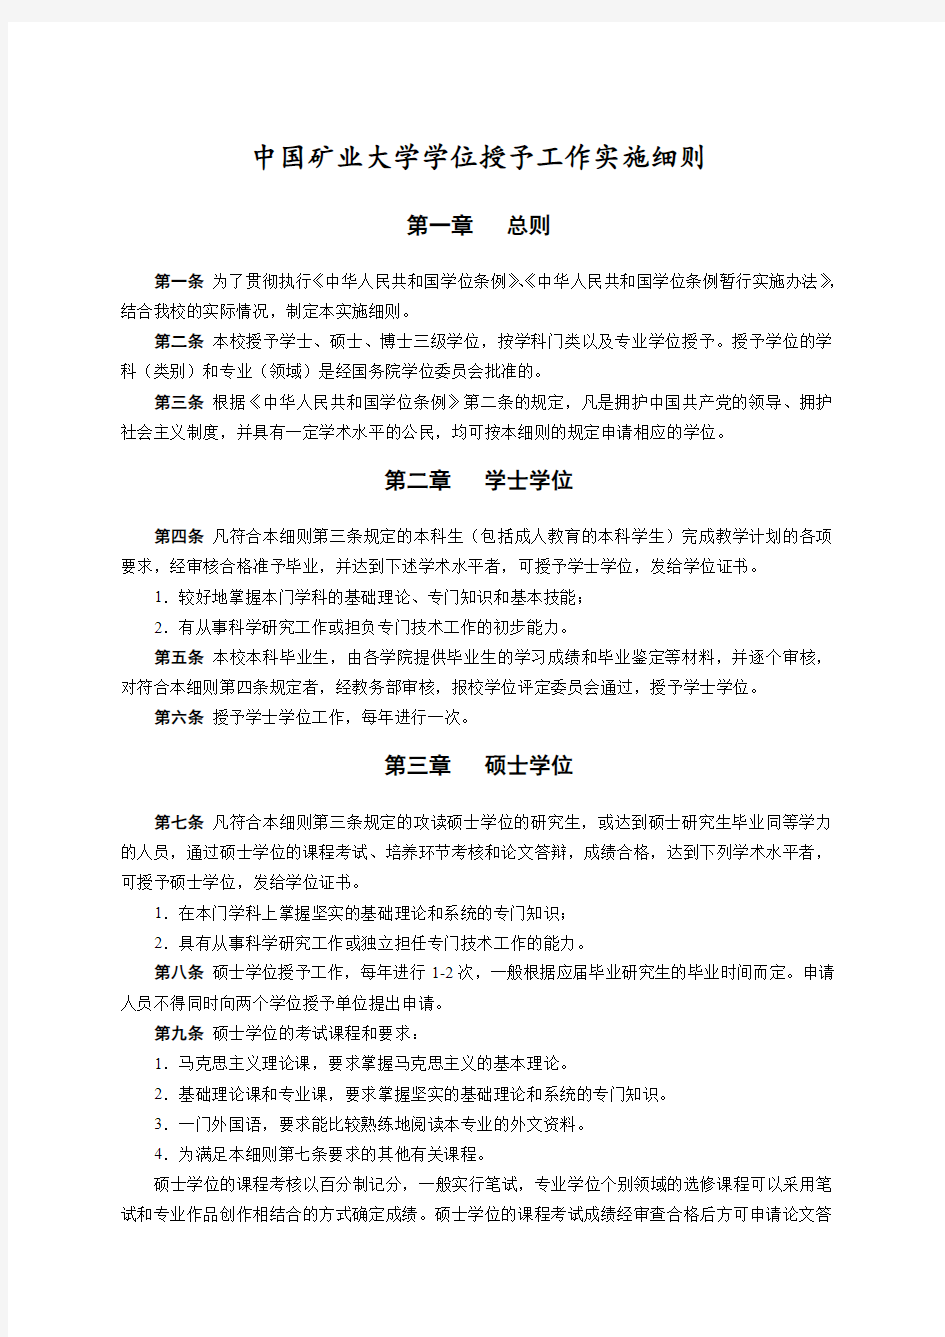 中国矿业大学学位授予工作实施细则